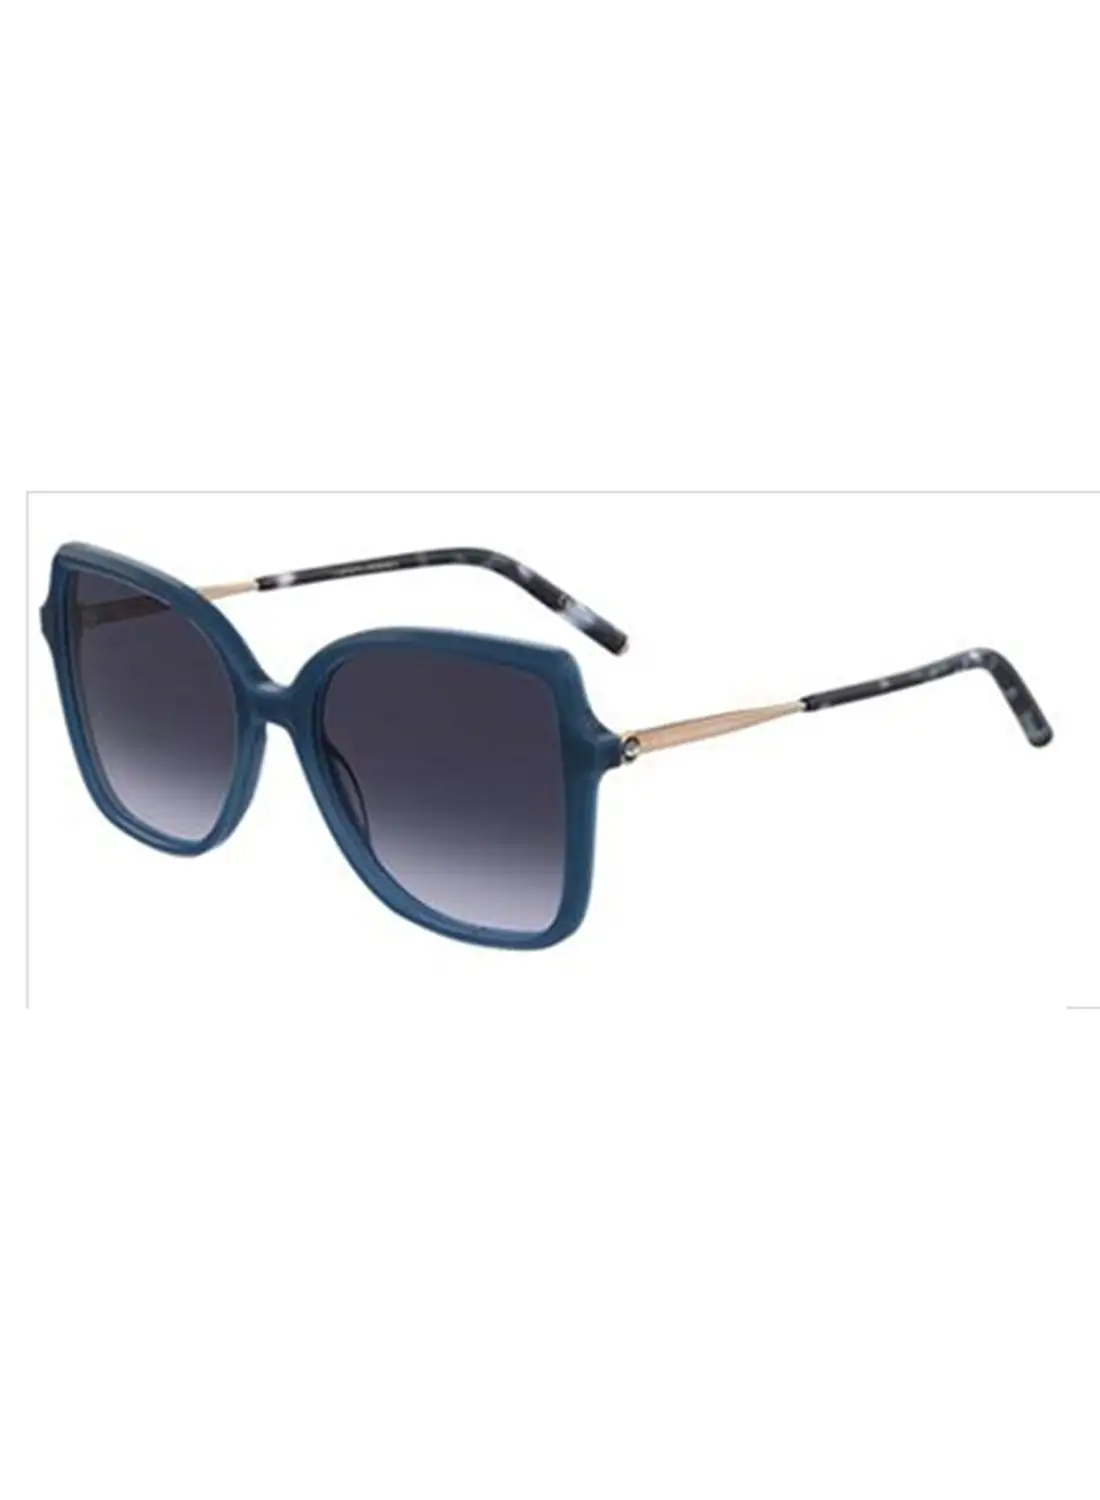 نظارة شمسية كارولينا هيريرا مربعة للنساء للحماية من الأشعة فوق البنفسجية - Her 0179/S Blue 17 - مقاس العدسة: 51.3 ملم